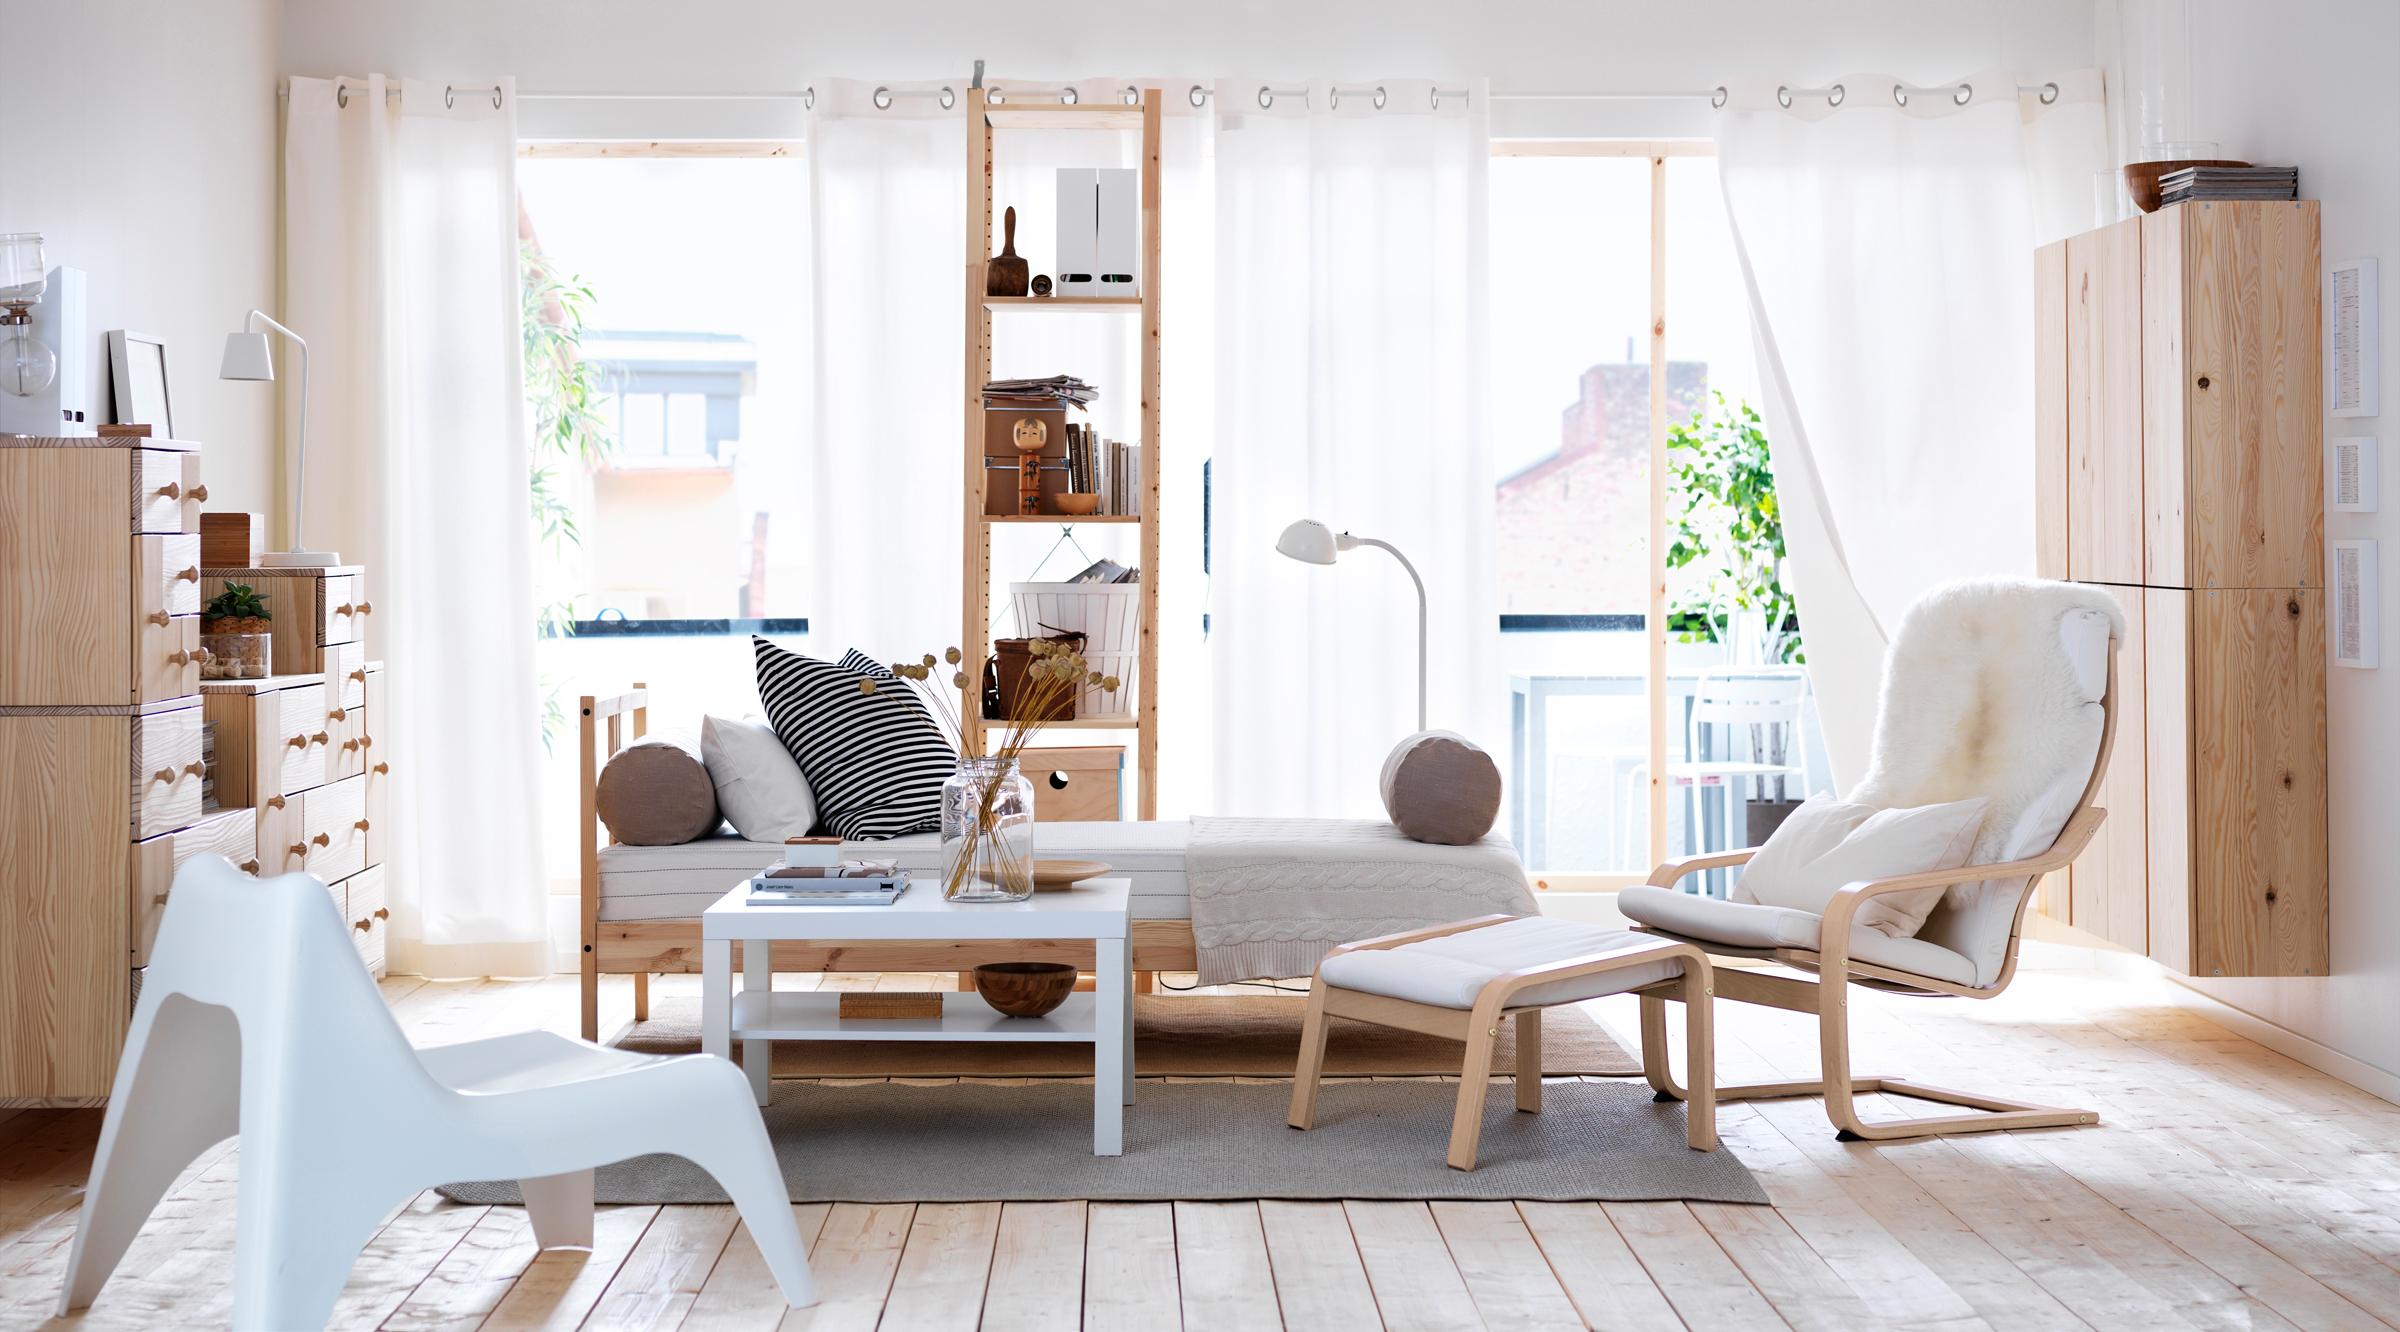 Schwingsessel mit weißem Polster im natürlichen Wohnzimmer #ikea ©Inter IKEA Systems B.V